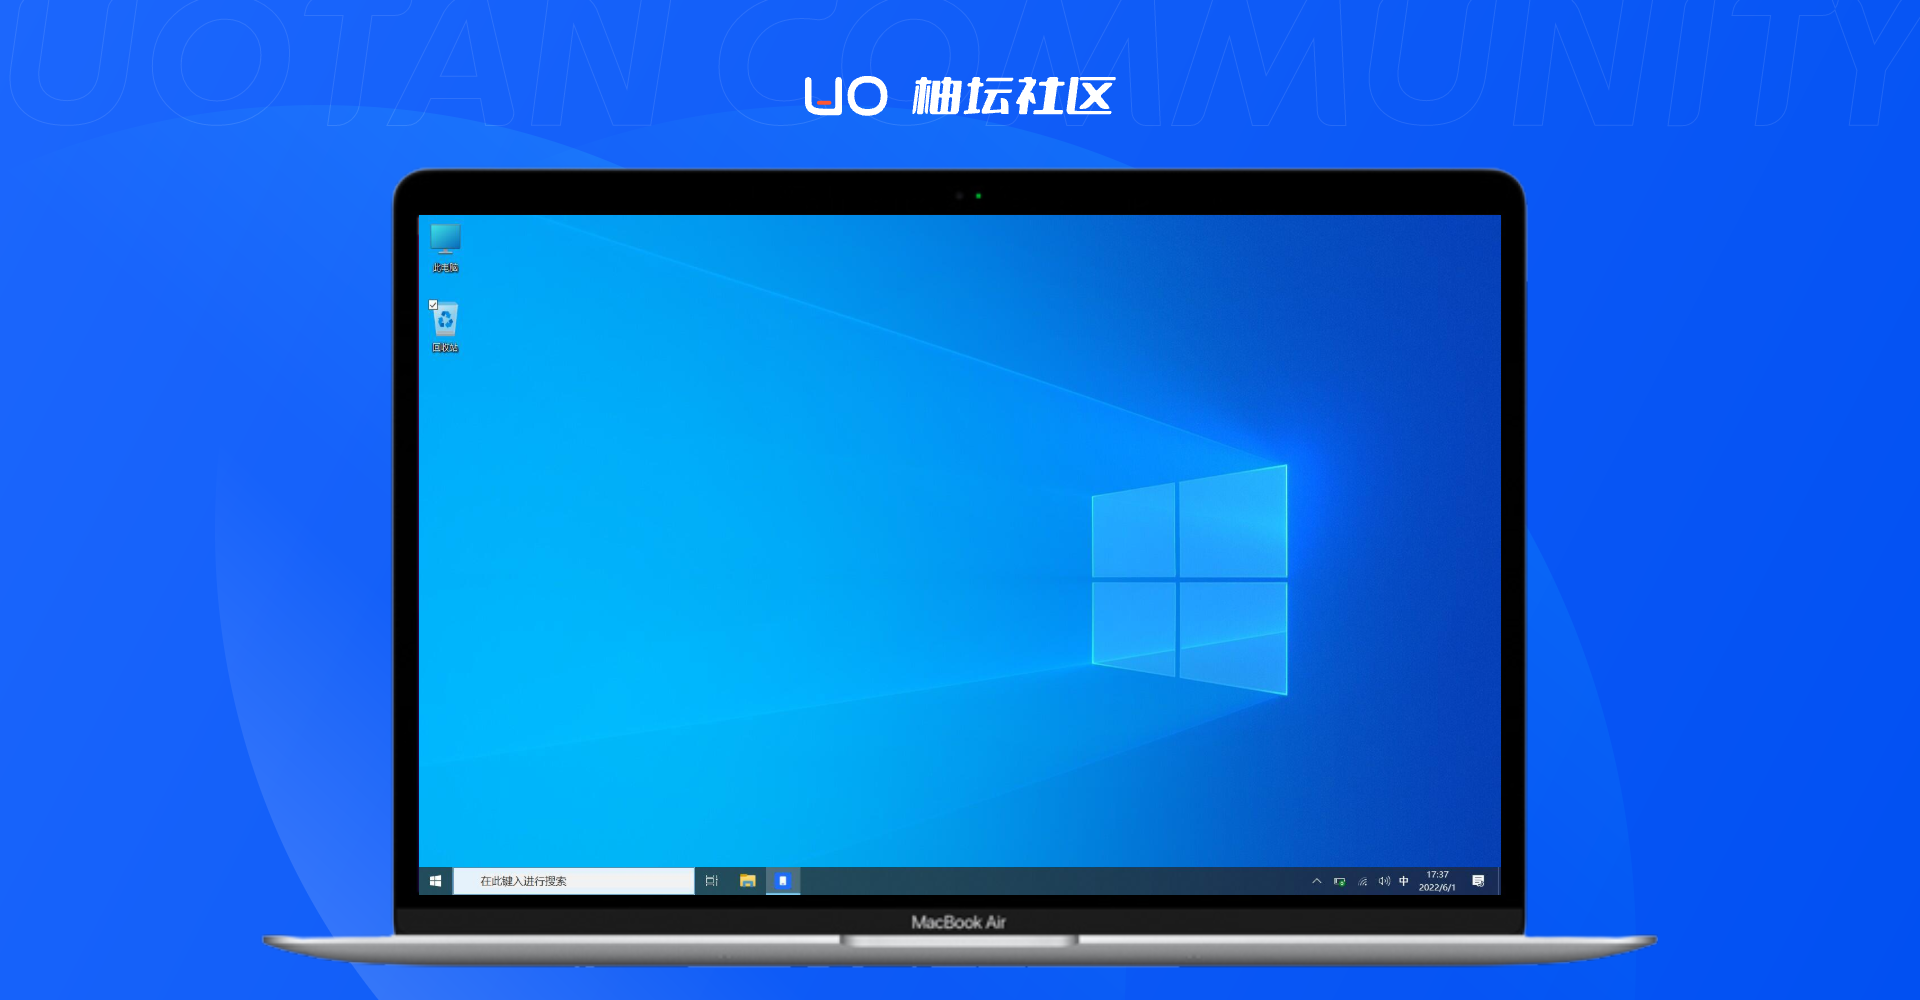 Windows 10 预览版 10.0.21390.1010 Arm64 中国大陆地区V2.0特供版 1.png